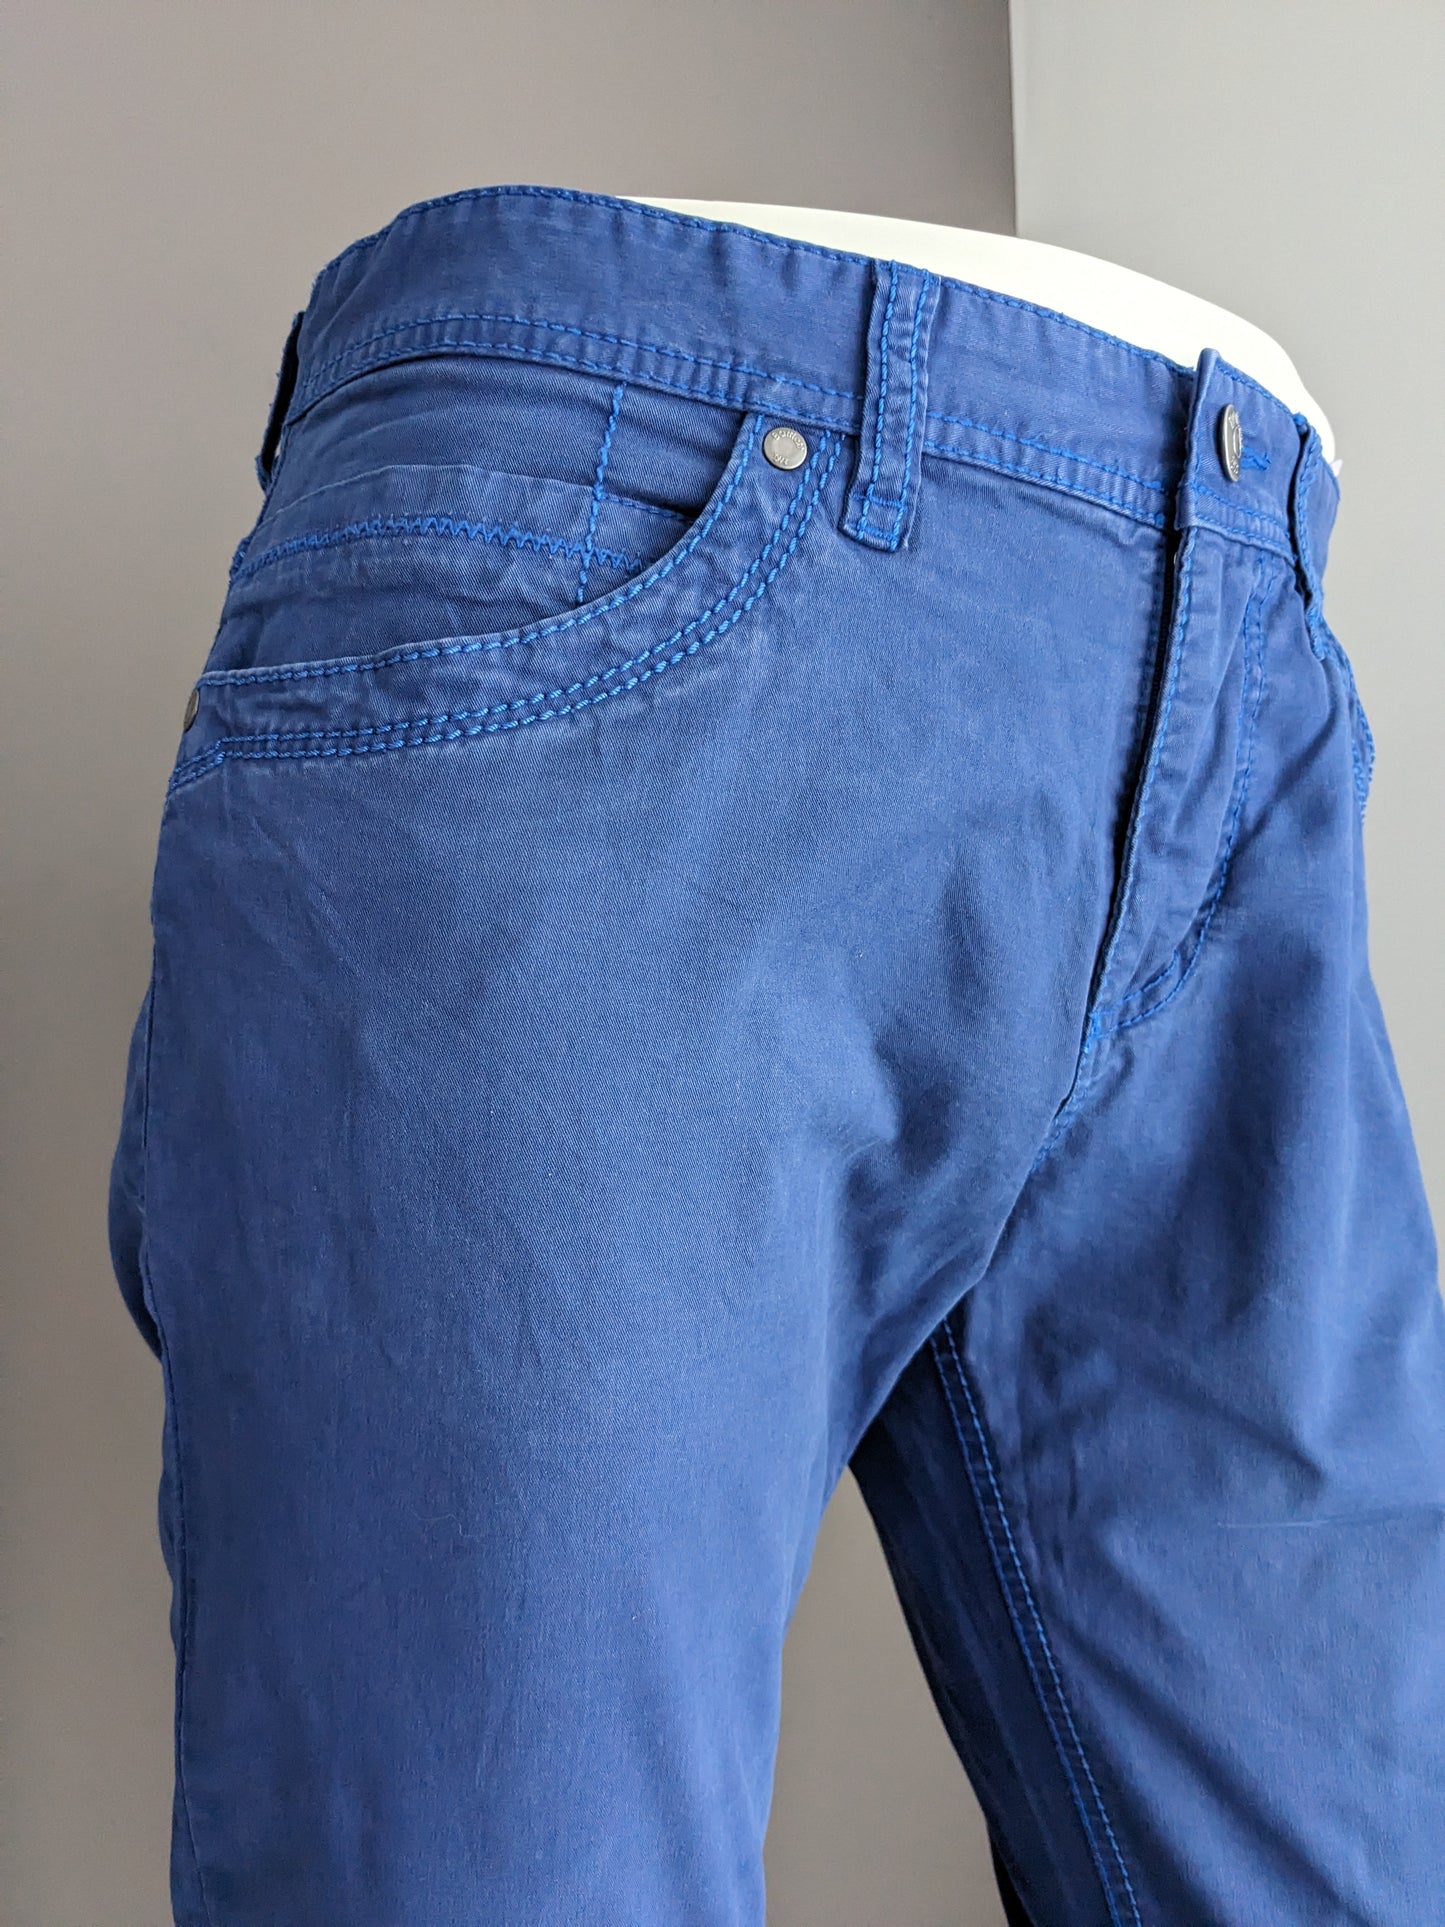 Pantalon / pantalon Bartlett. Bleu. Taille 24 (48) / m